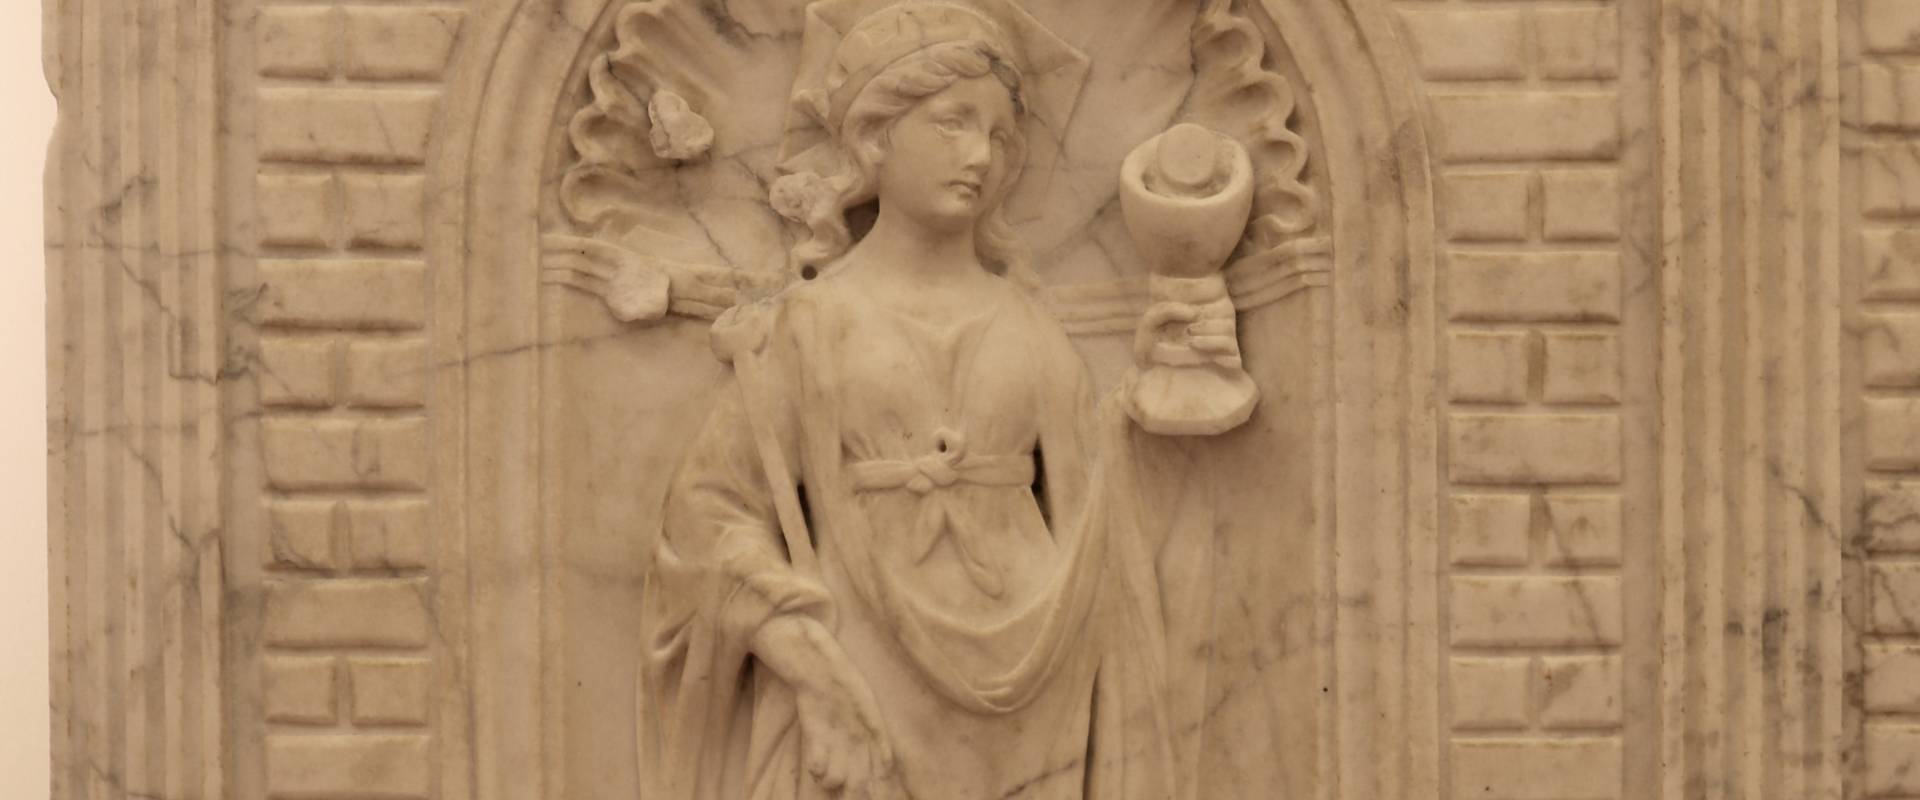 Antonio rossellino, sarcofago del beato marcolino amanni, 1458, da s. giacomo in s. domenico a forlì, virtù, fede 01 foto di Sailko